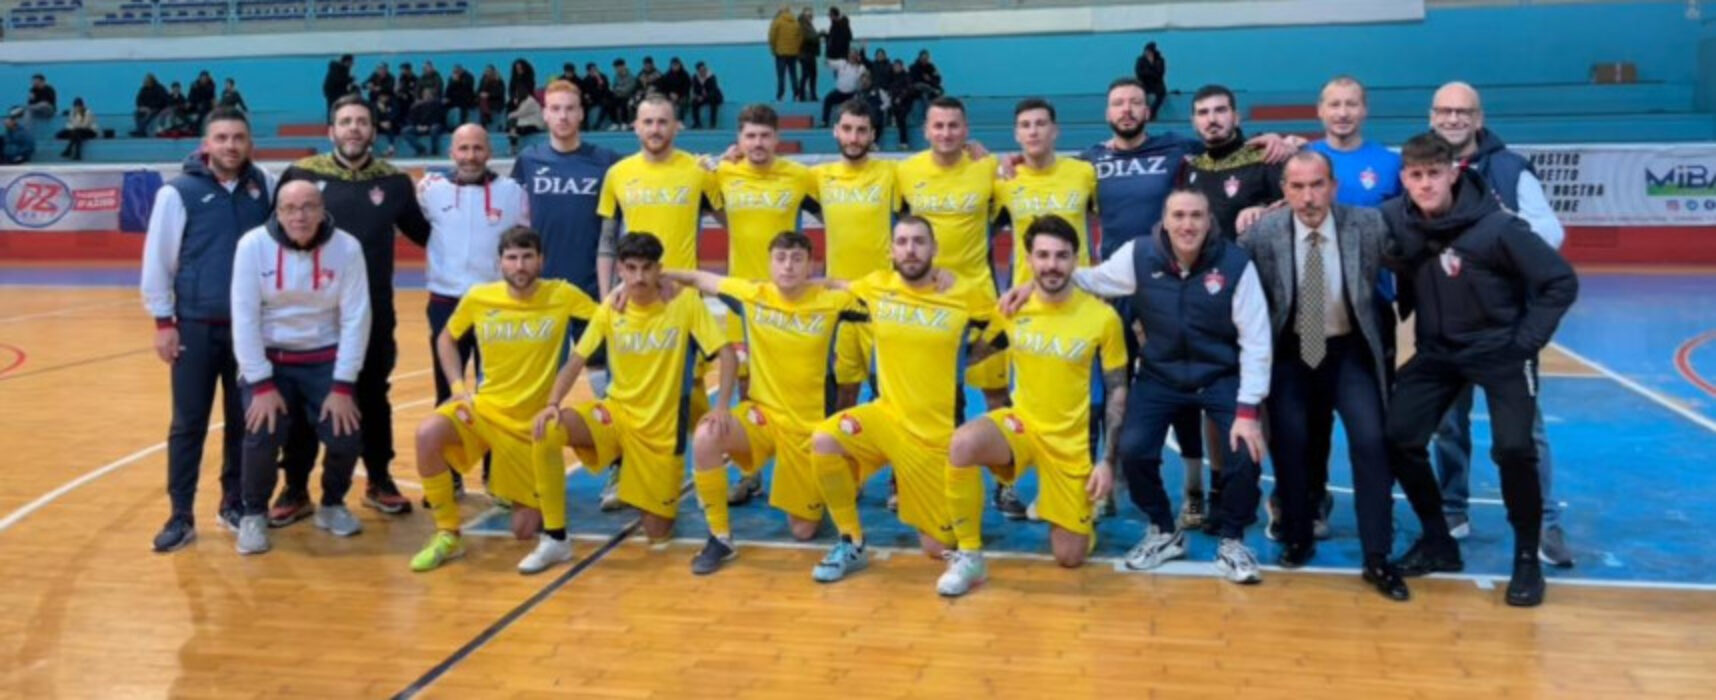 Futsal, turni in trasferta per Diaz, Futbol Cinco e Nettuno